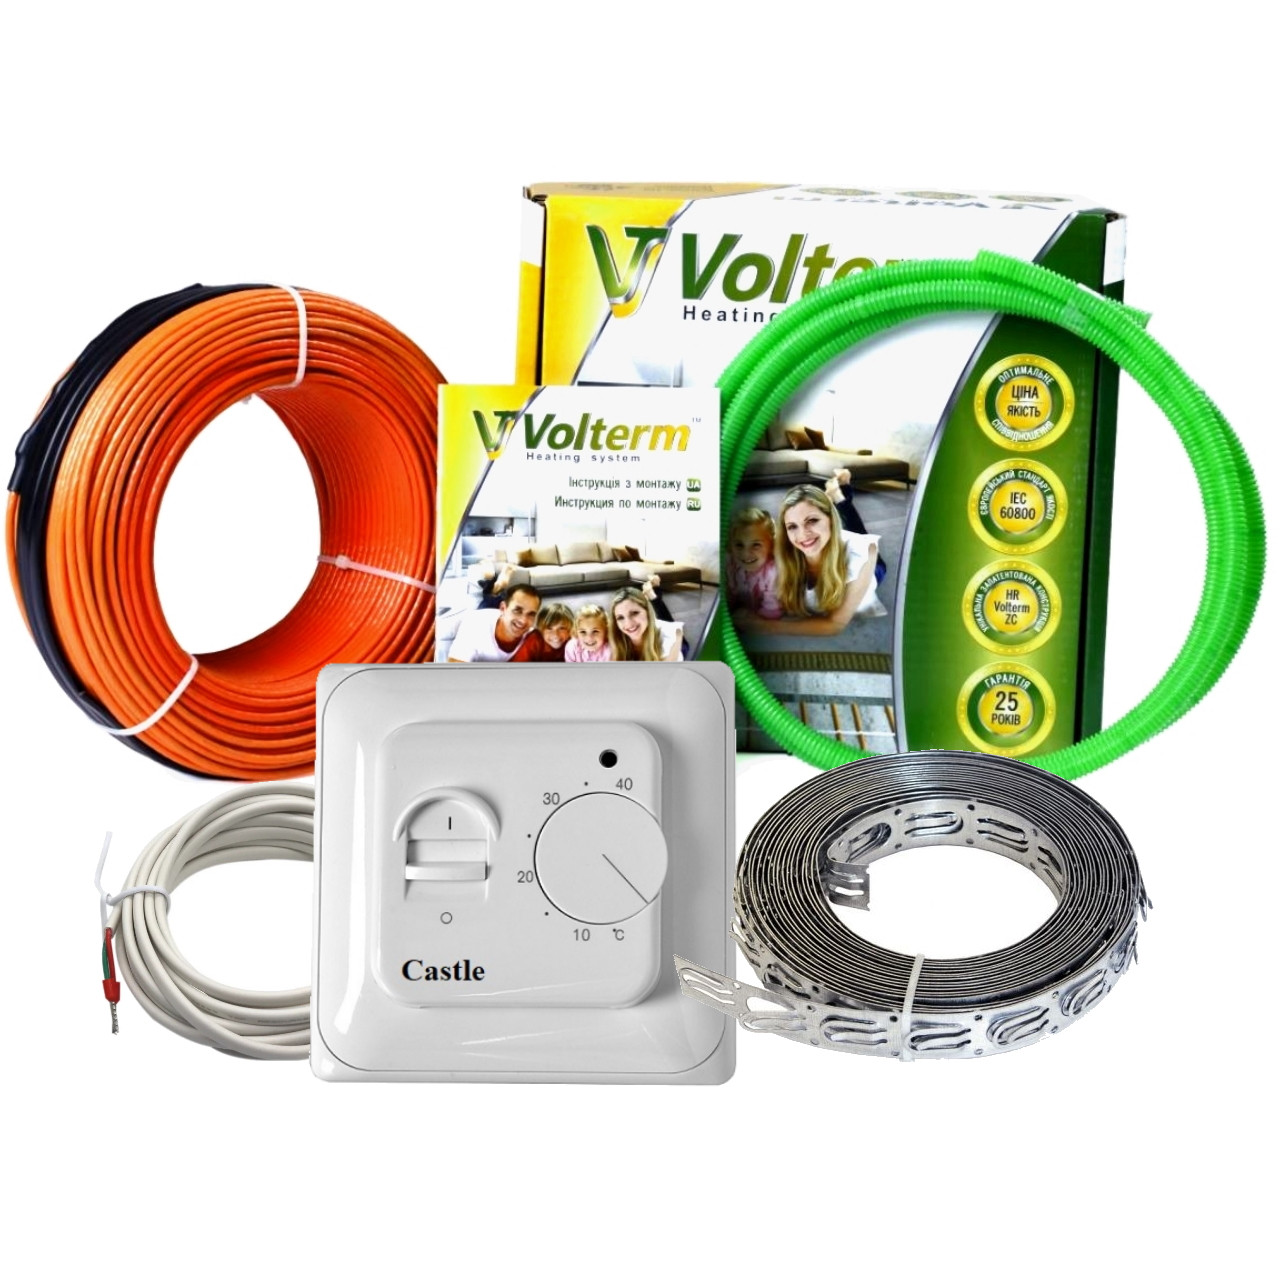 

Нагревательный кабель Volterm комплект теплого пола с механическим терморегулятором 22 м/400 Вт /2,2-2,7м²